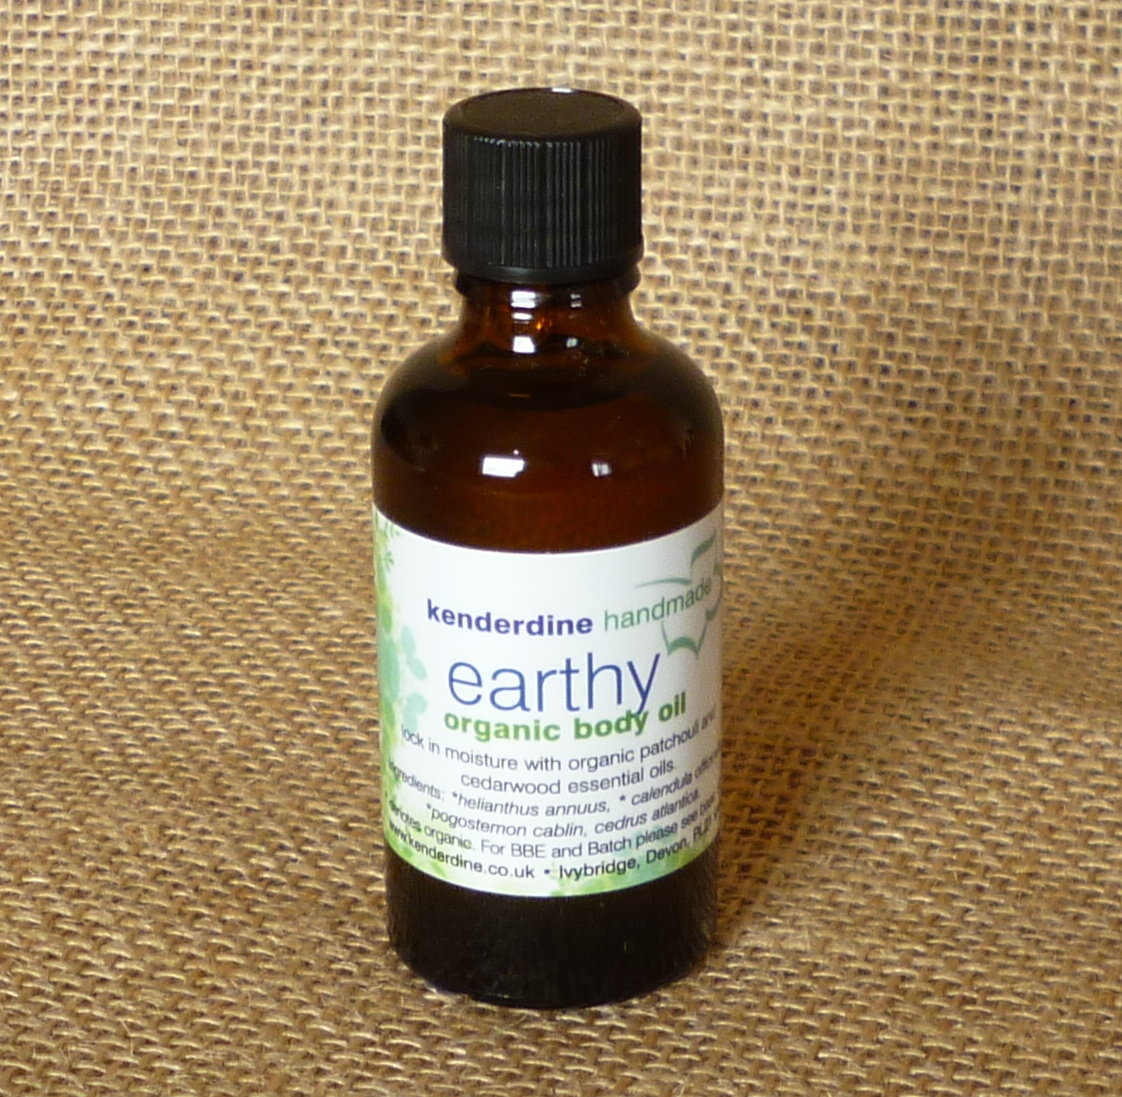 Earthy body oil